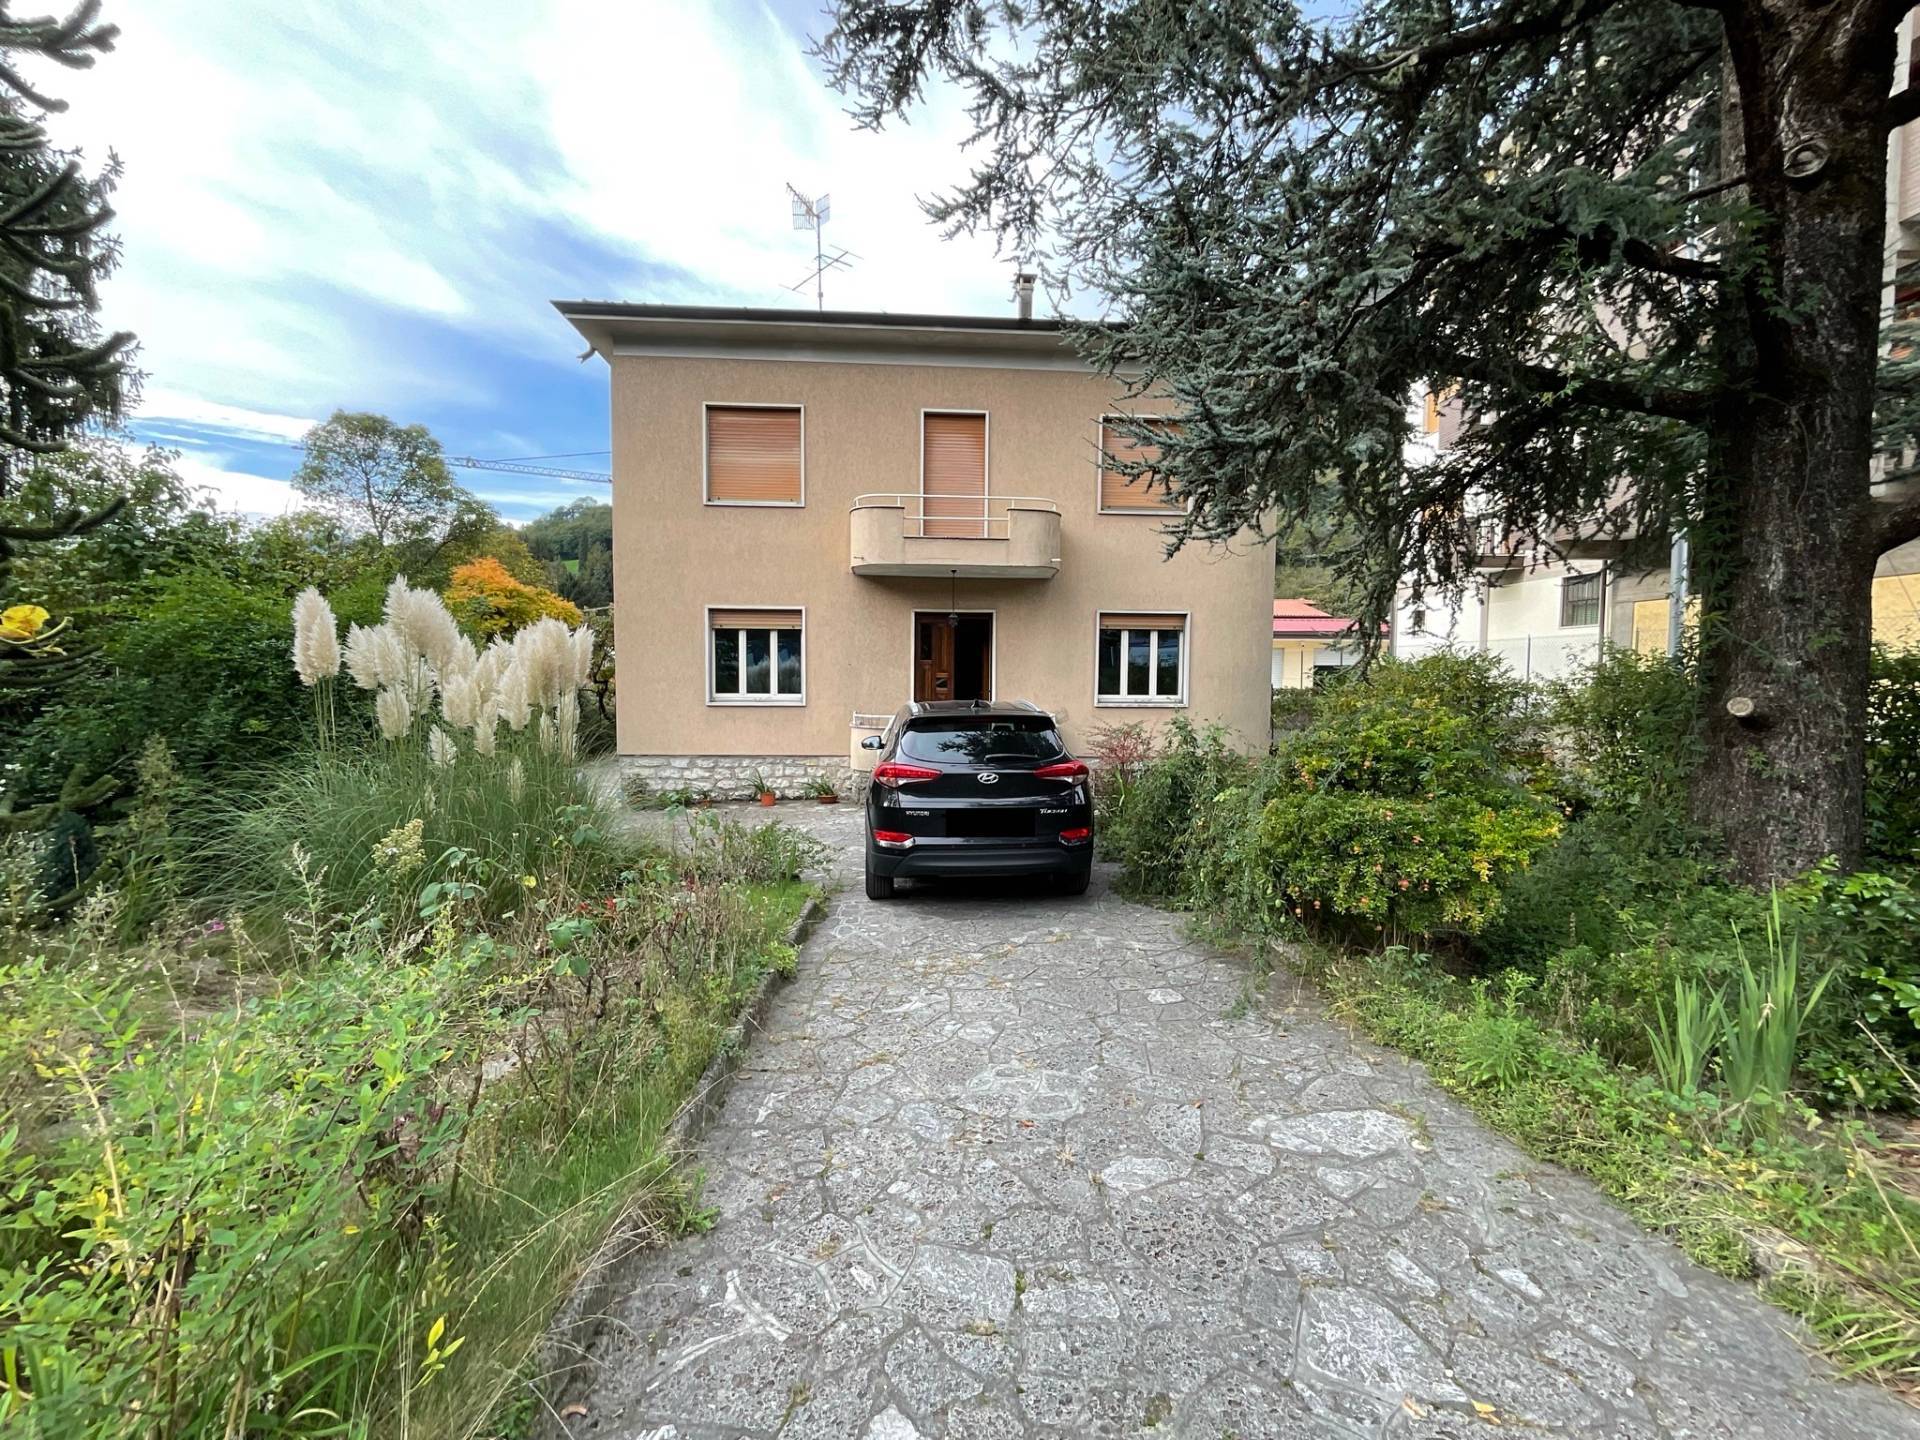 Villa in vendita a Sovere, 6 locali, prezzo € 250.000 | CambioCasa.it